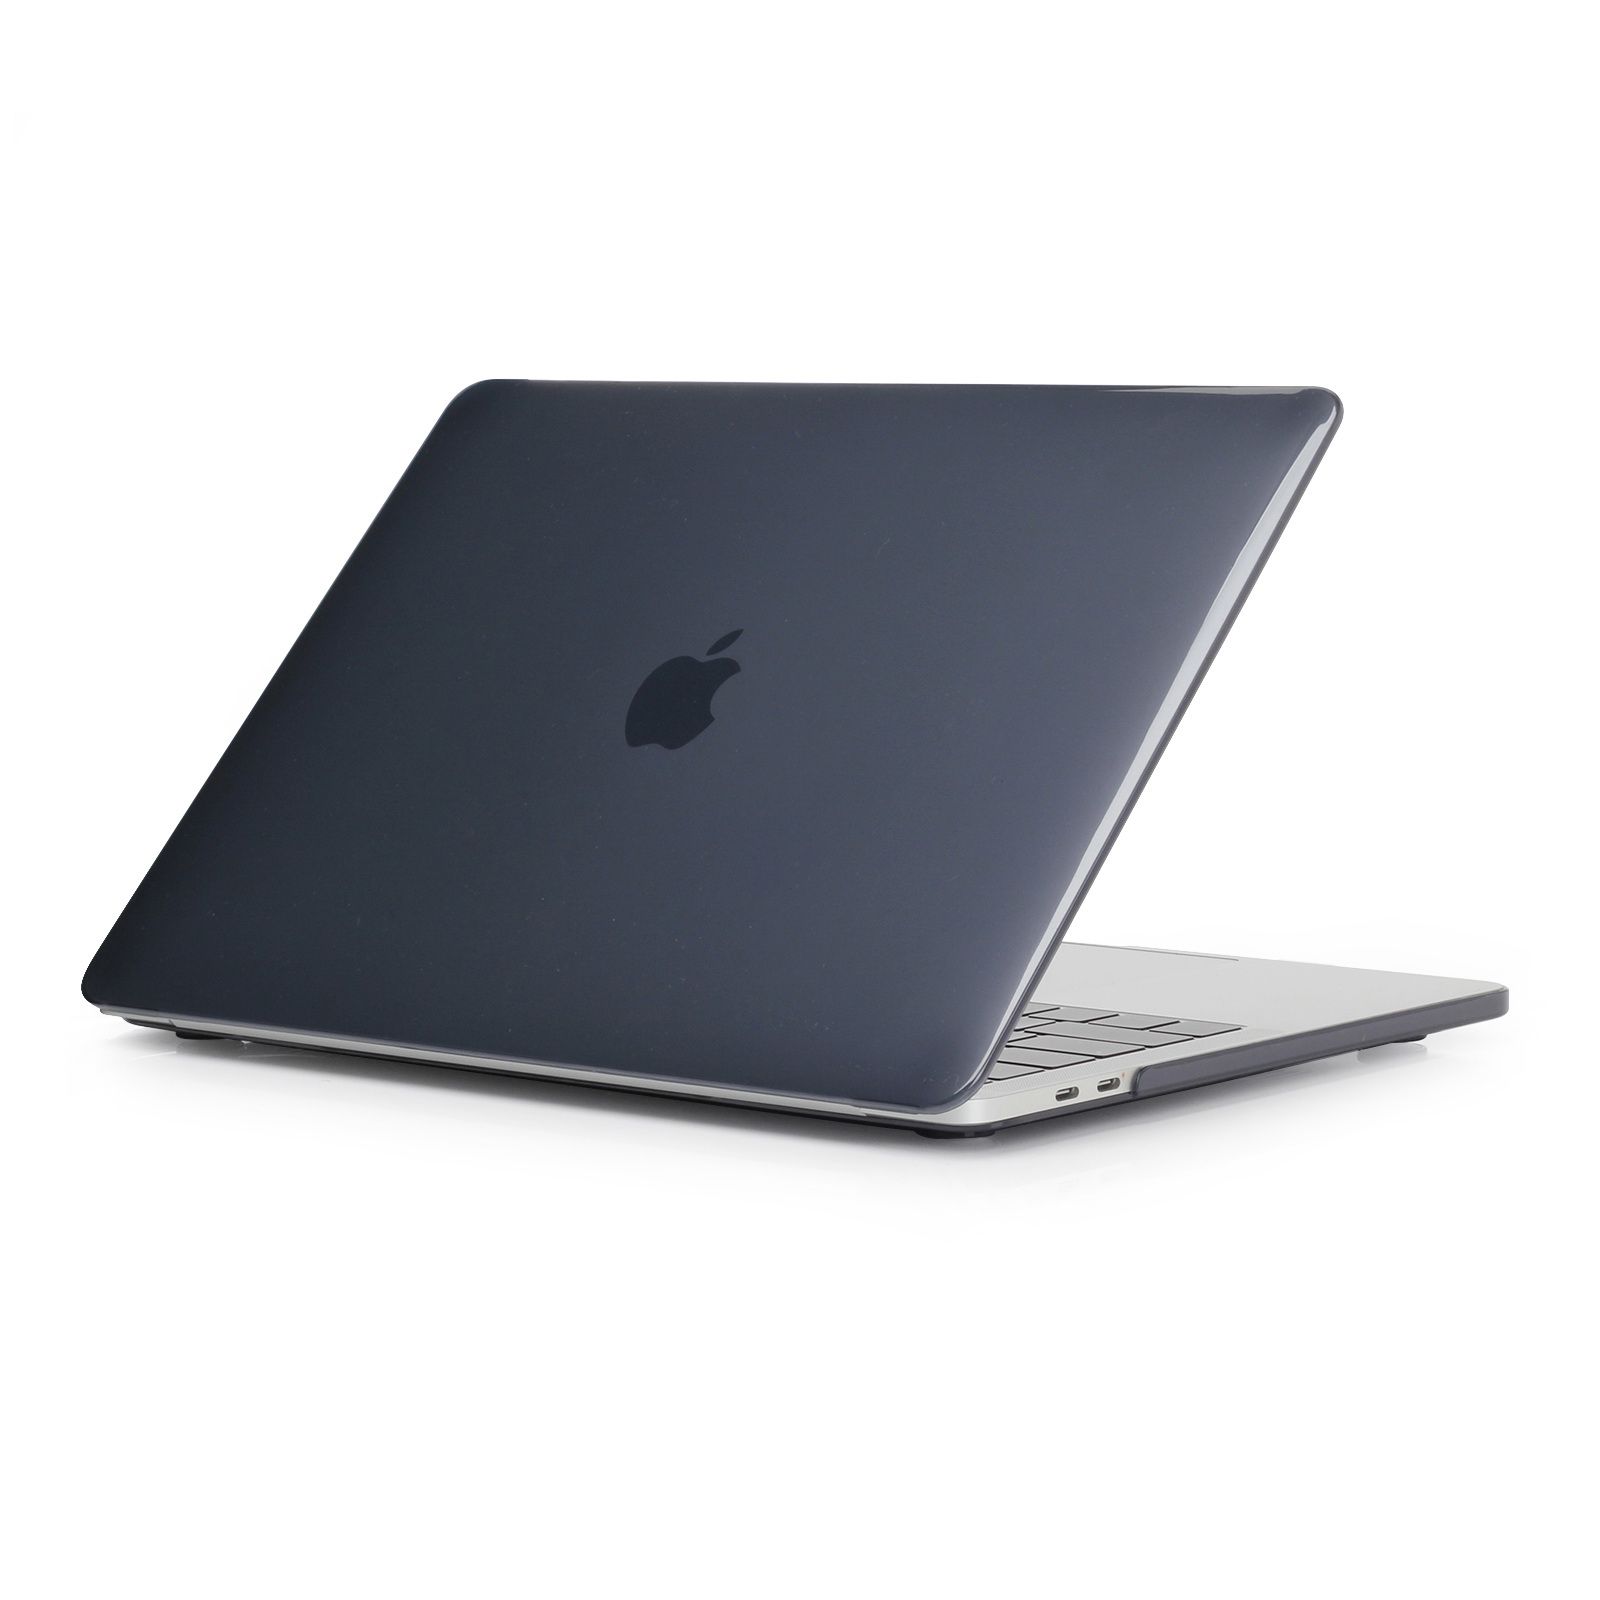 iPouzdro.cz pro MacBook Pro 15 (2012-2015) 2222221002030 černá